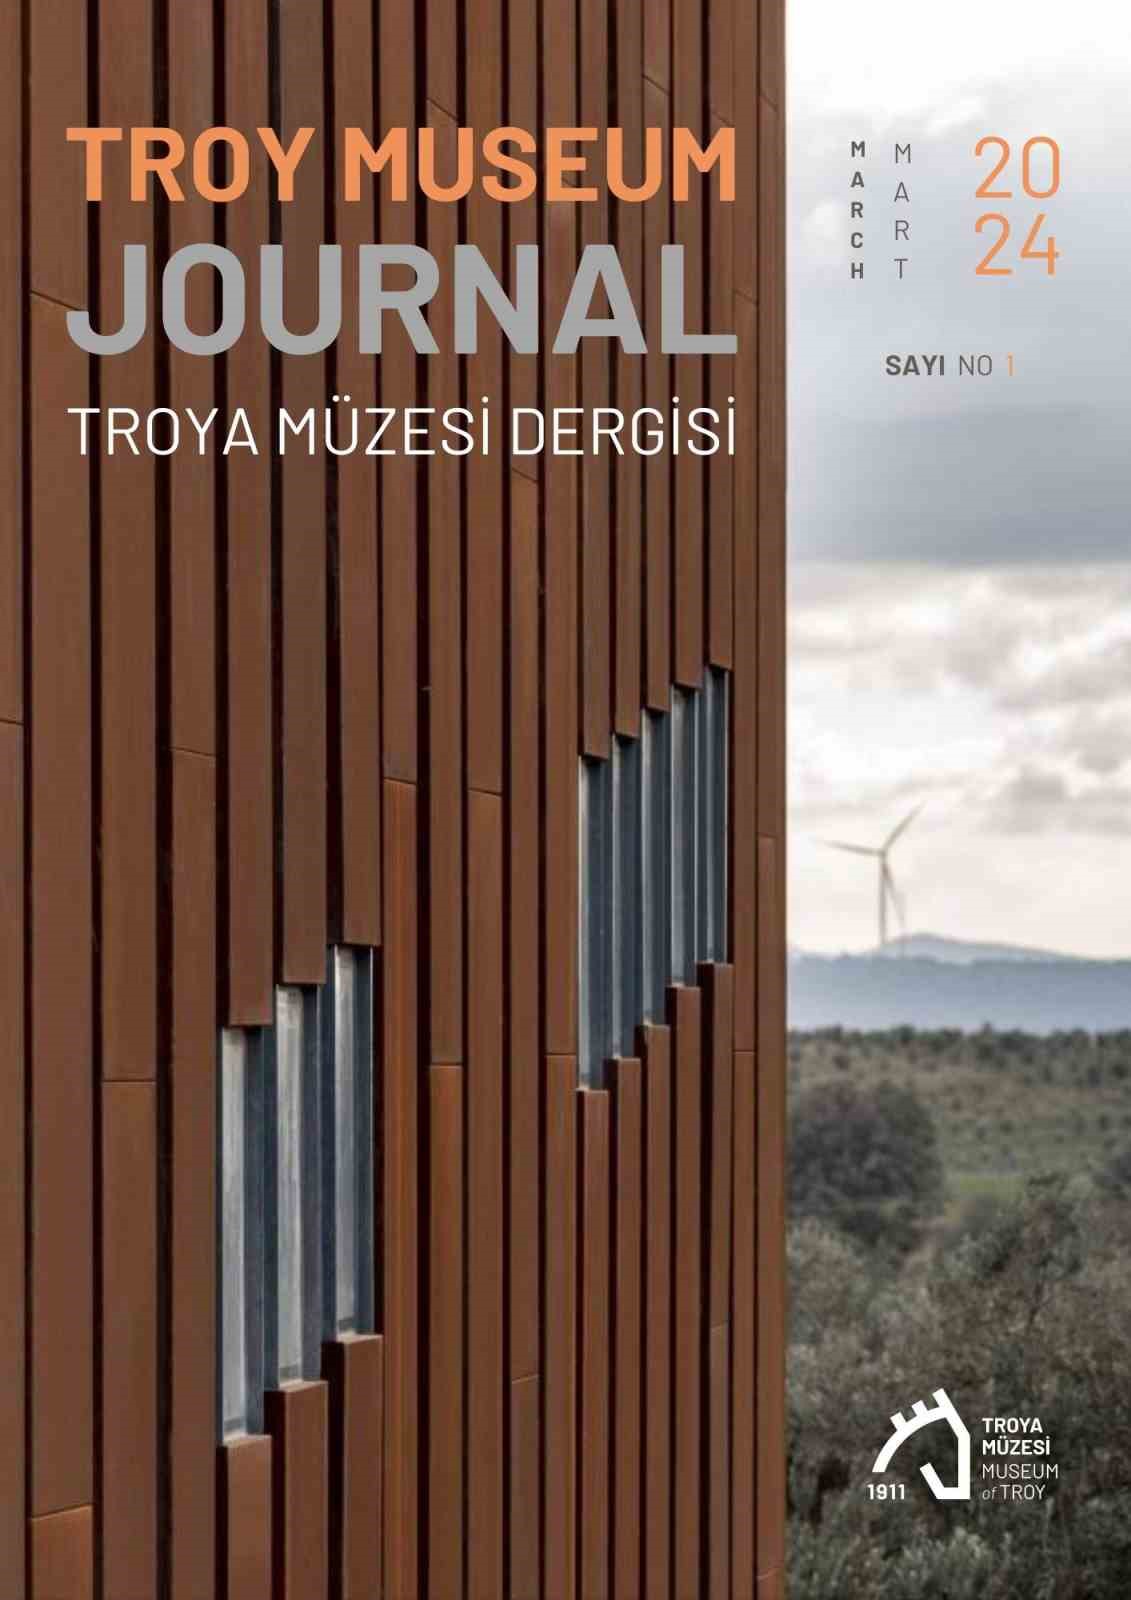 Türkiye’nin ilk müze dergisi, Troy Museum Journal yayın hayatına başladı
